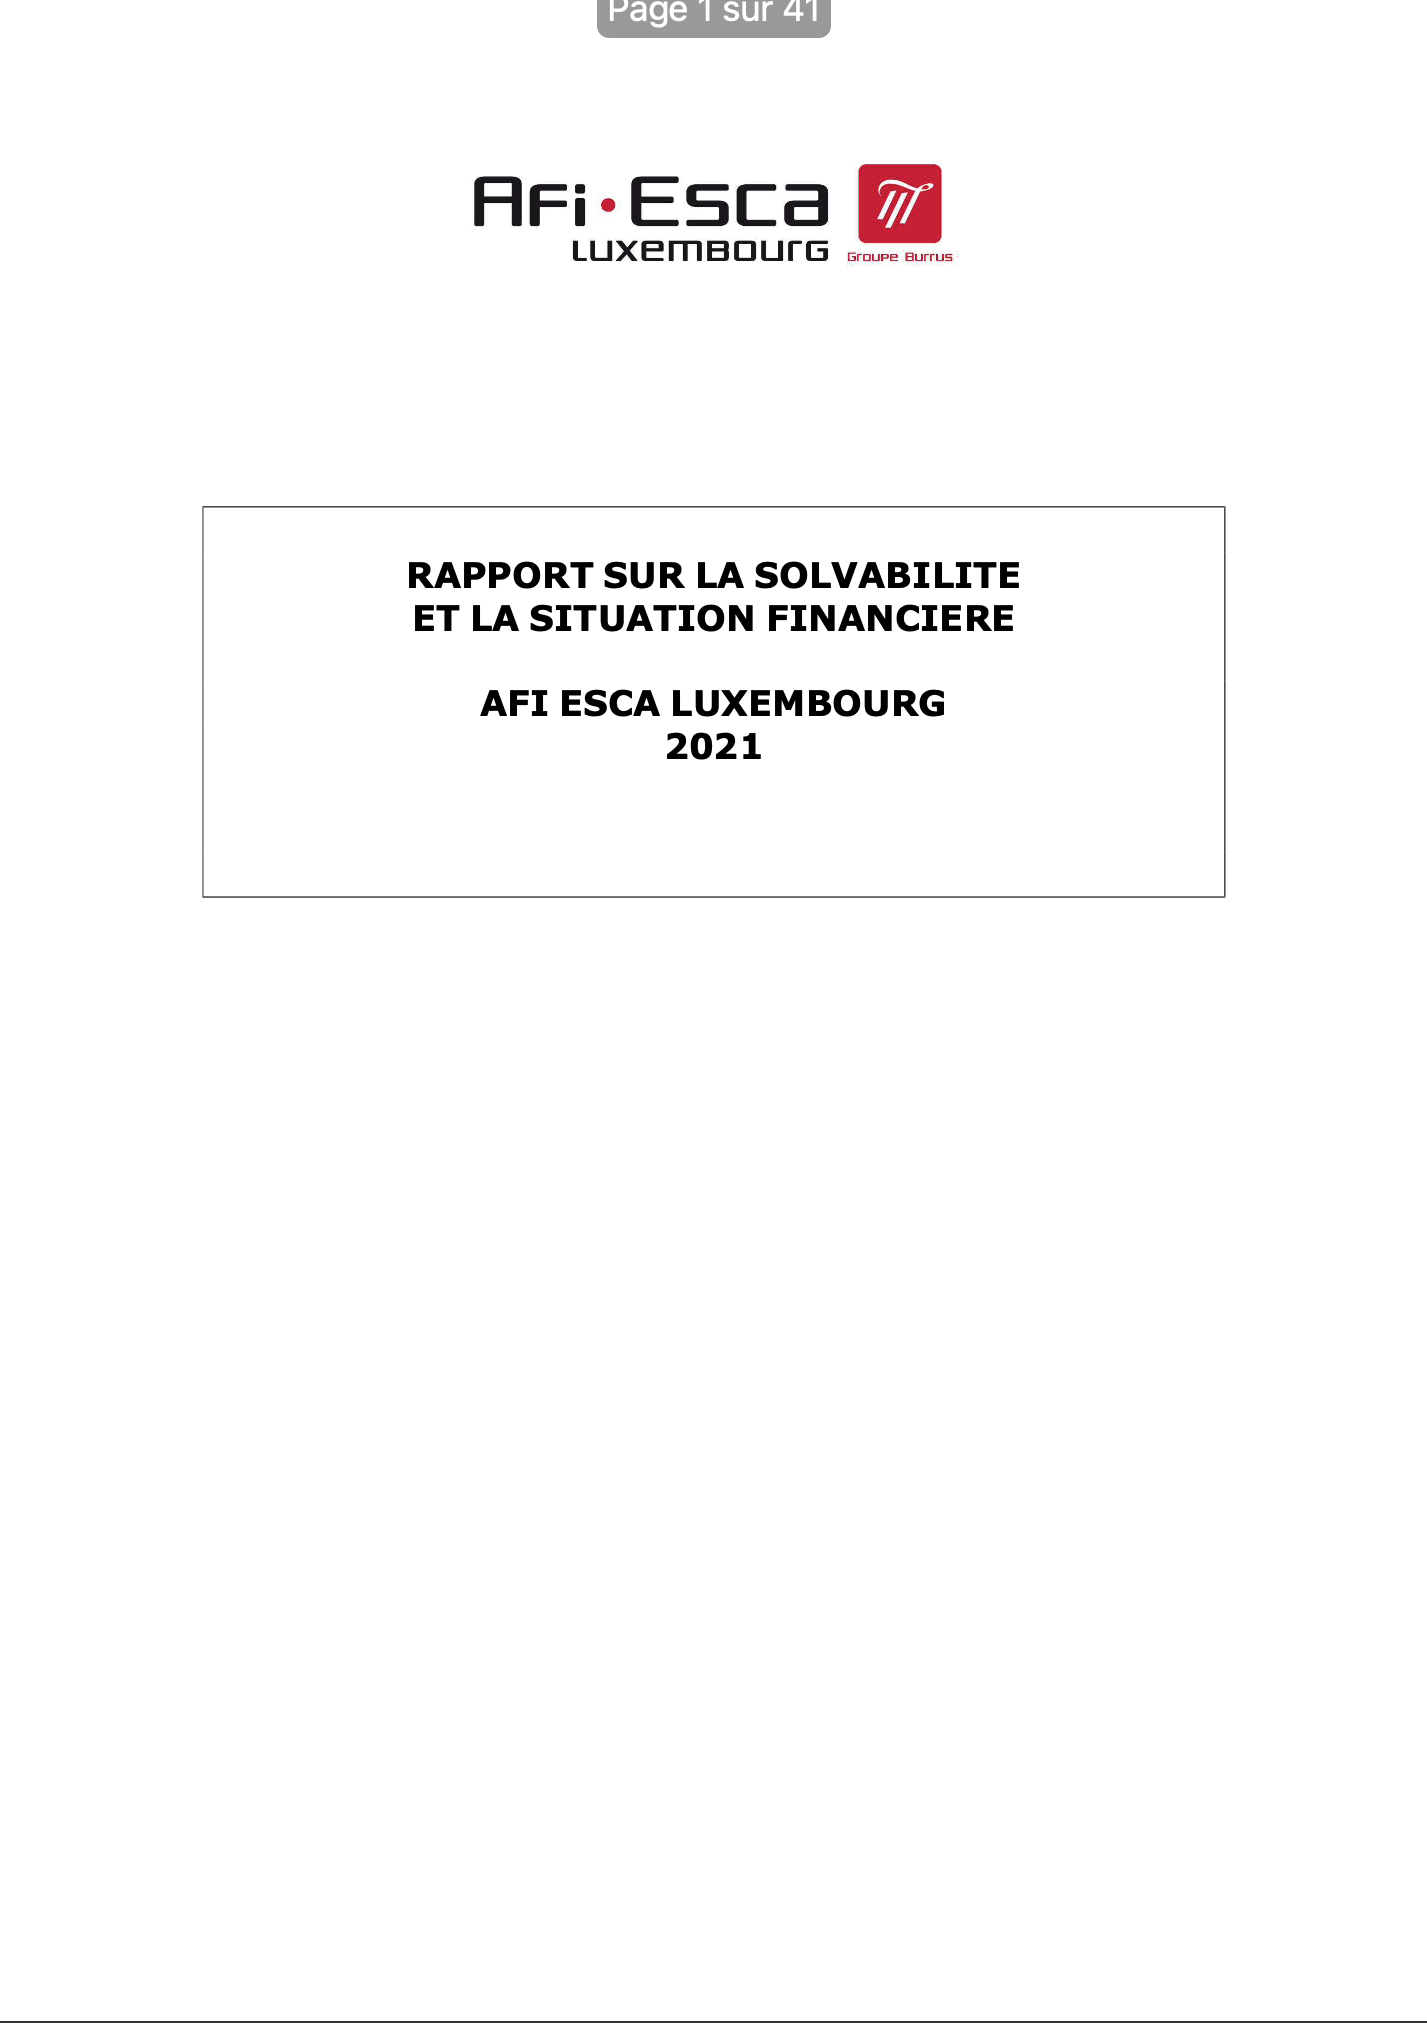 Rapport sur la solvabilité et la situation financière 2021